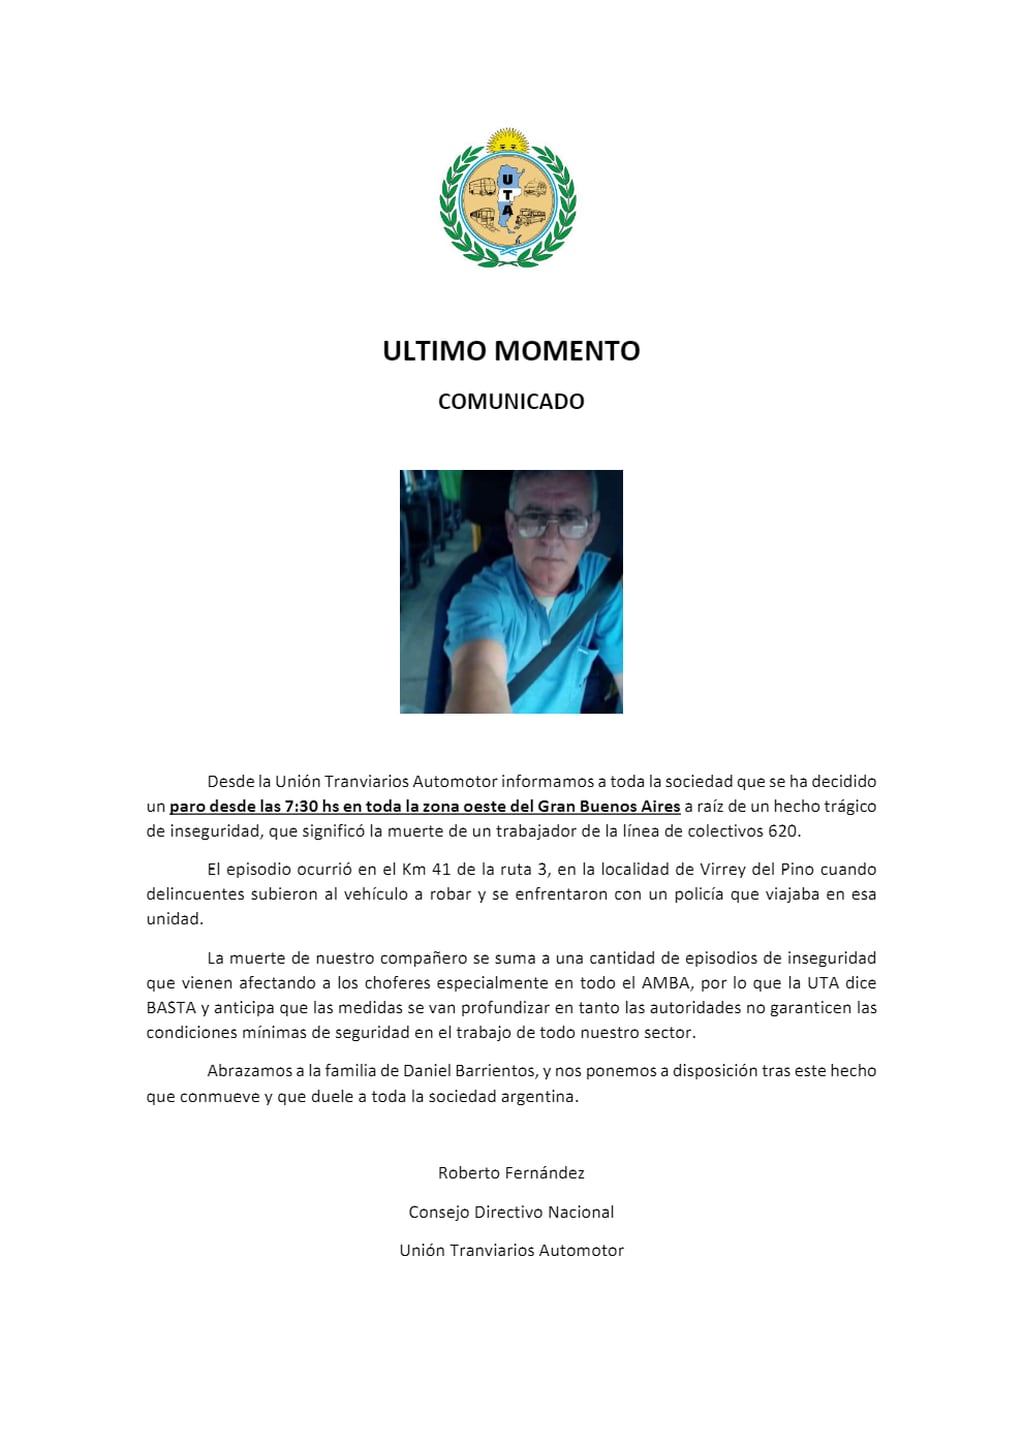 El comunicado de la UTA tras el asesinato de Daniel Barrientos.